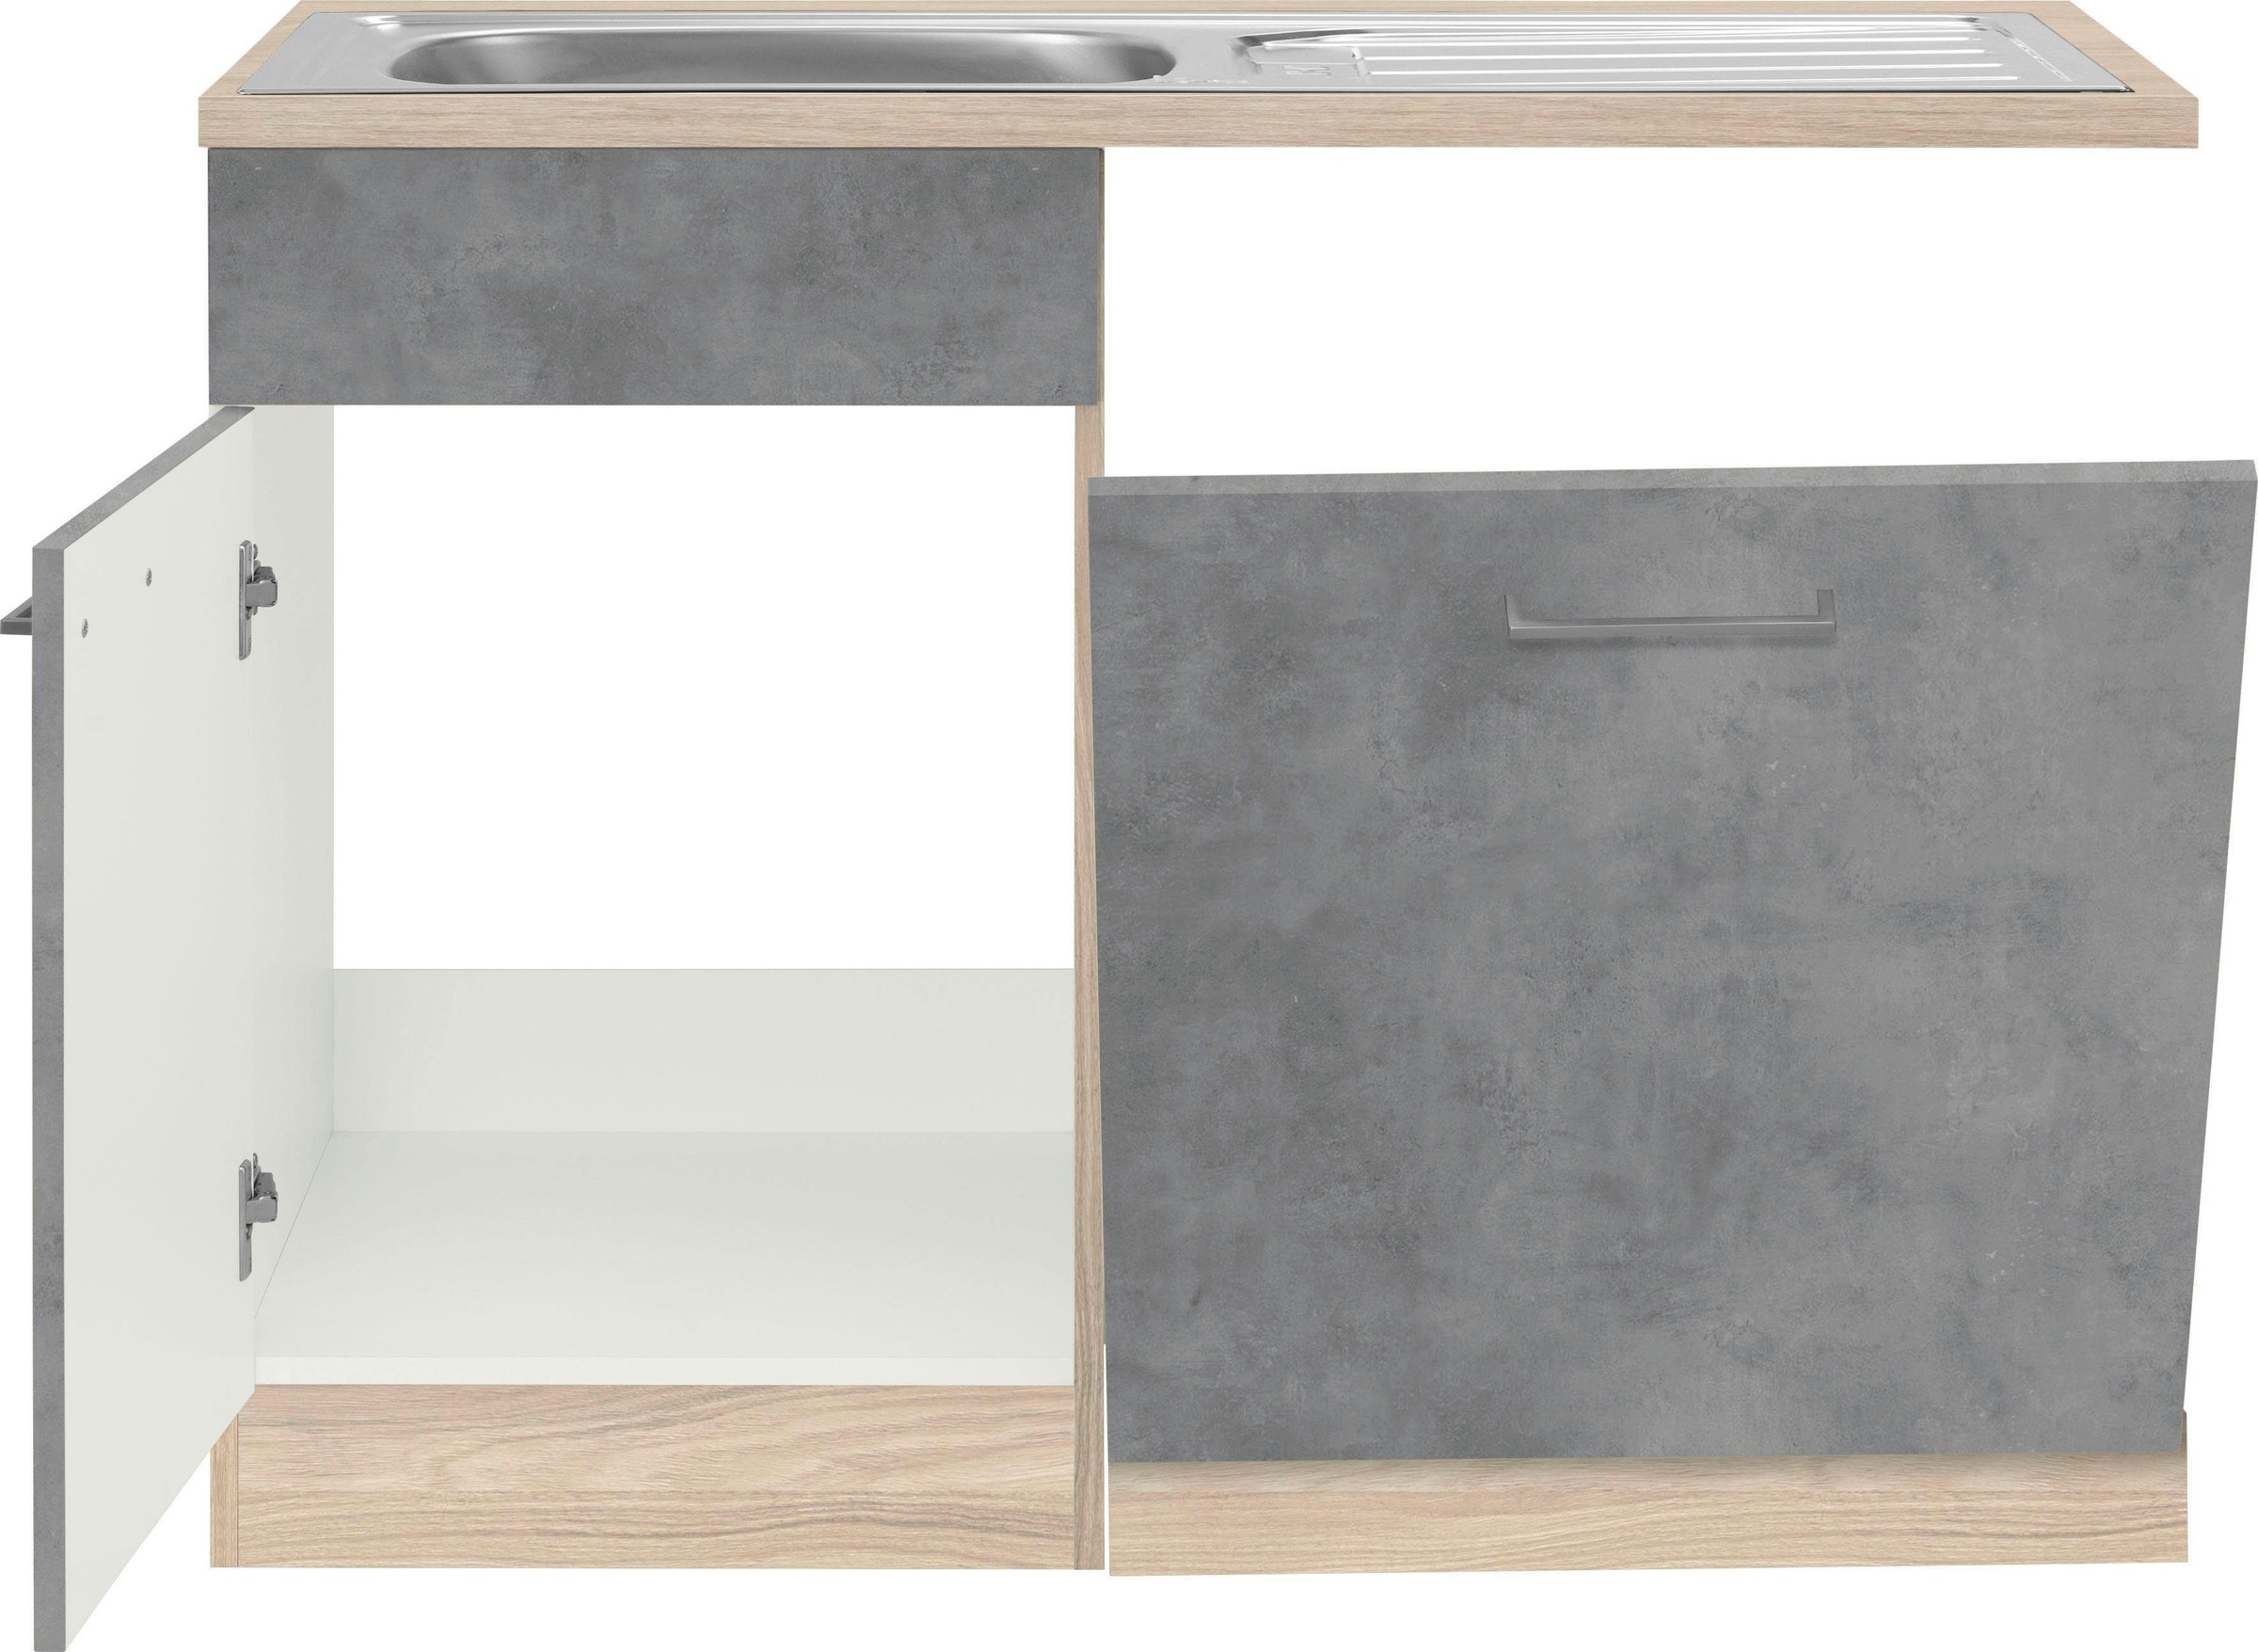 wiho Küchen Spülenschrank »Zell«, Breite 110 cm, inkl. Tür/Sockel für  Geschirrspüler auf Rechnung kaufen